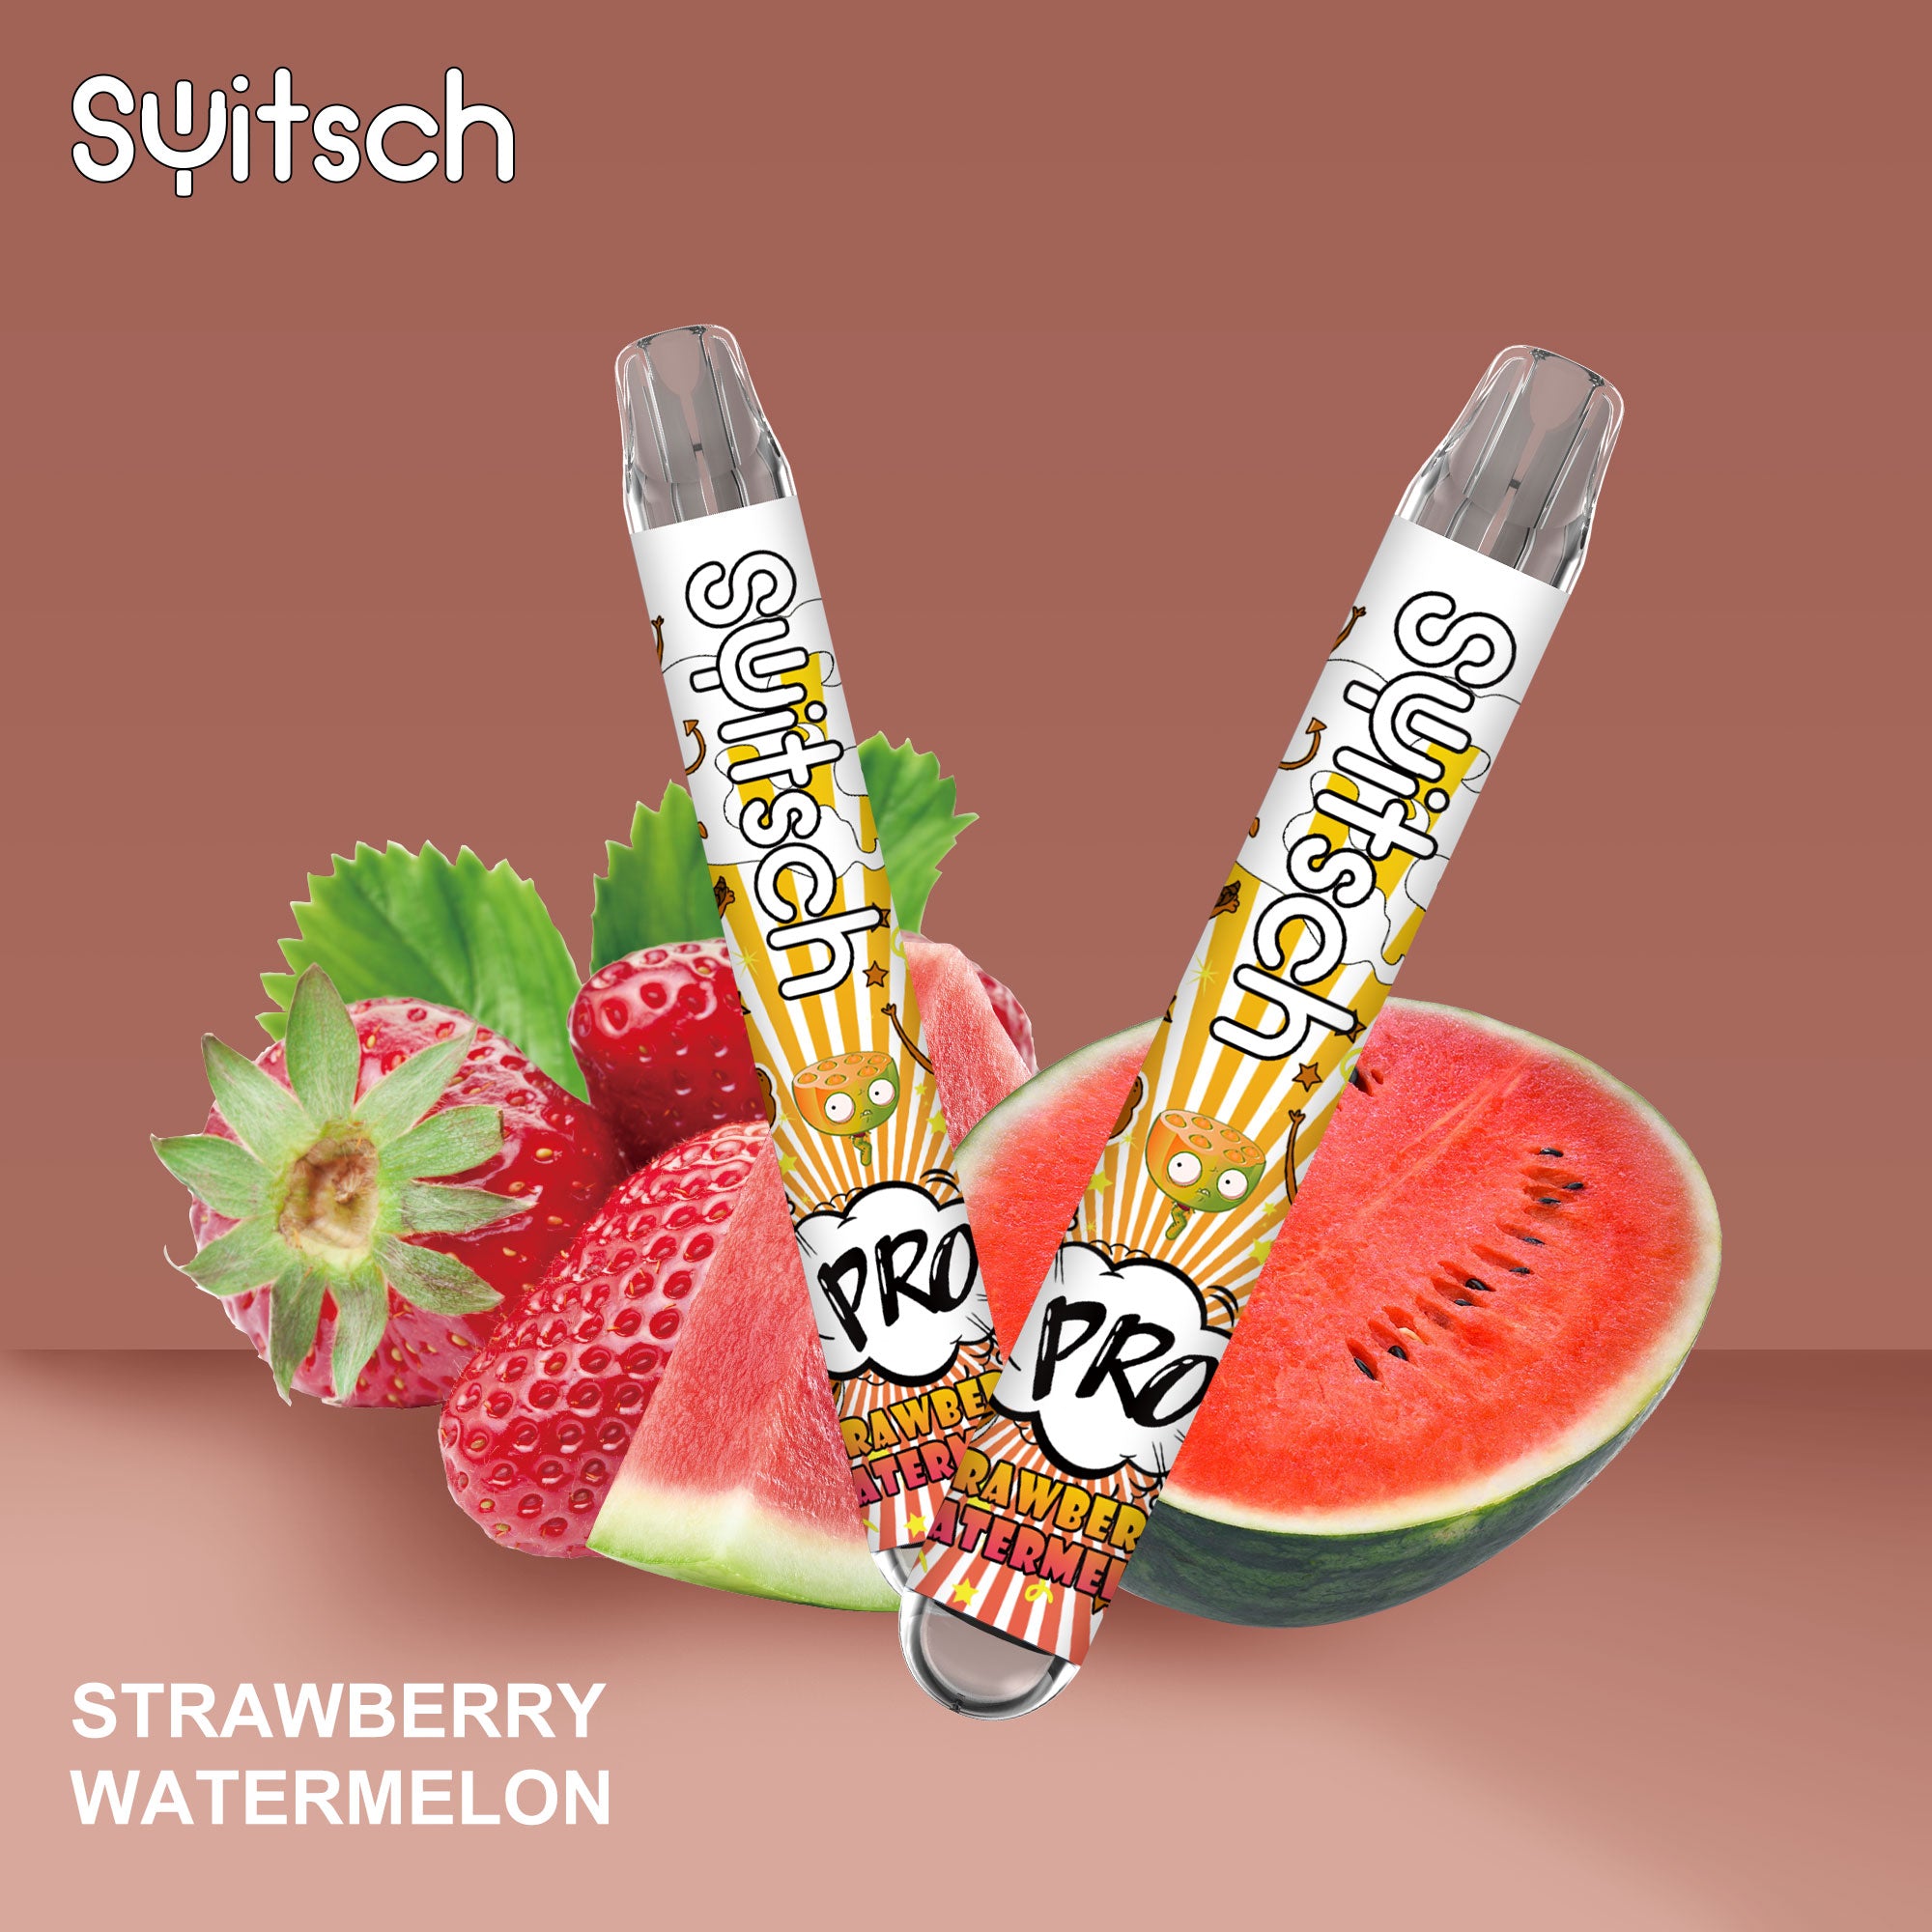 Erdbeer-Wassermelone – Puff Pro 2 %